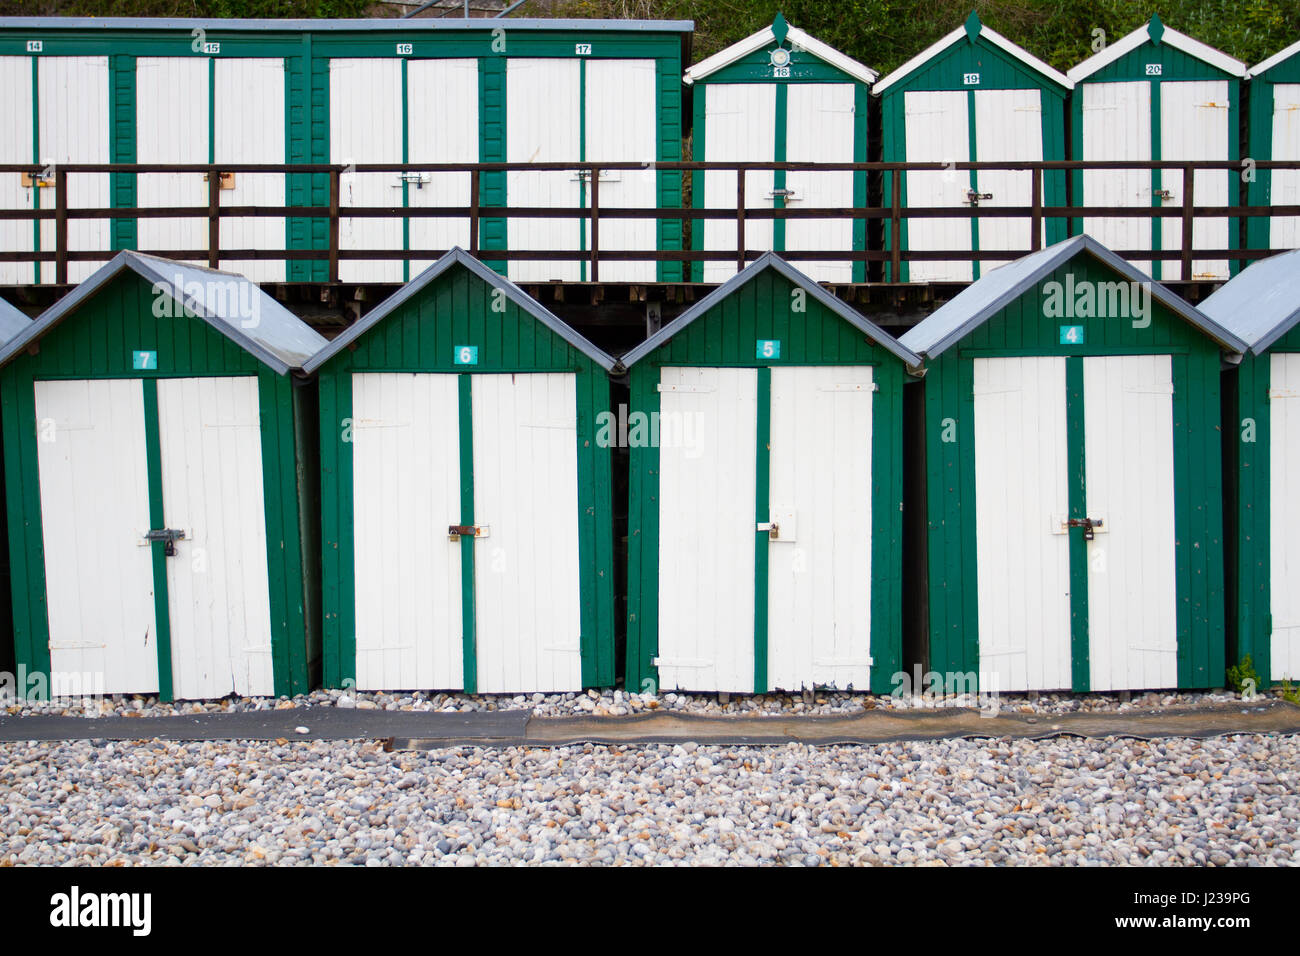 Gleichmäßigen Reihen von traditionellen, grün und weiß lackiert Strandhütten an einem britischen Strand mit Schlösser an den Türen. Stockfoto